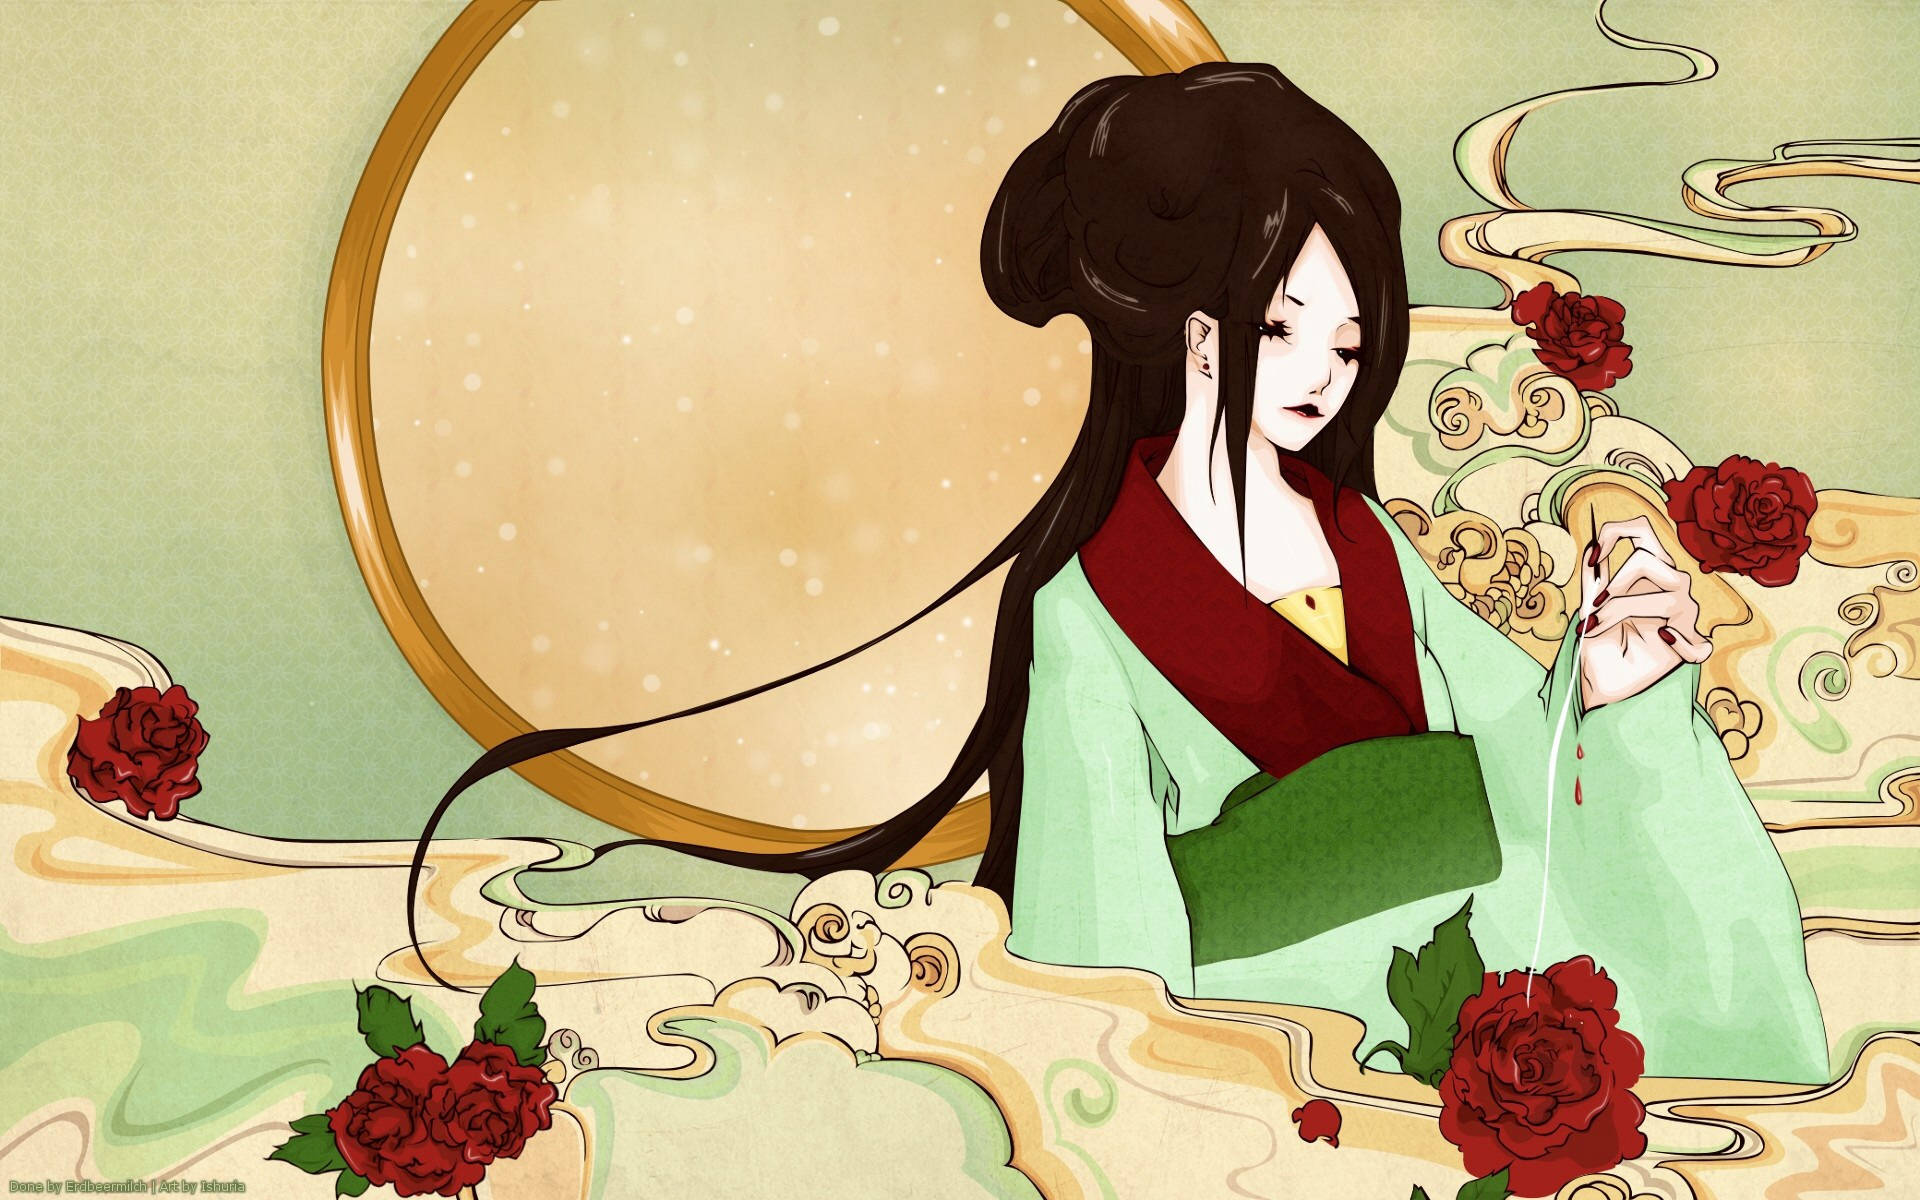 Geishasom Håller I En Nål. Wallpaper